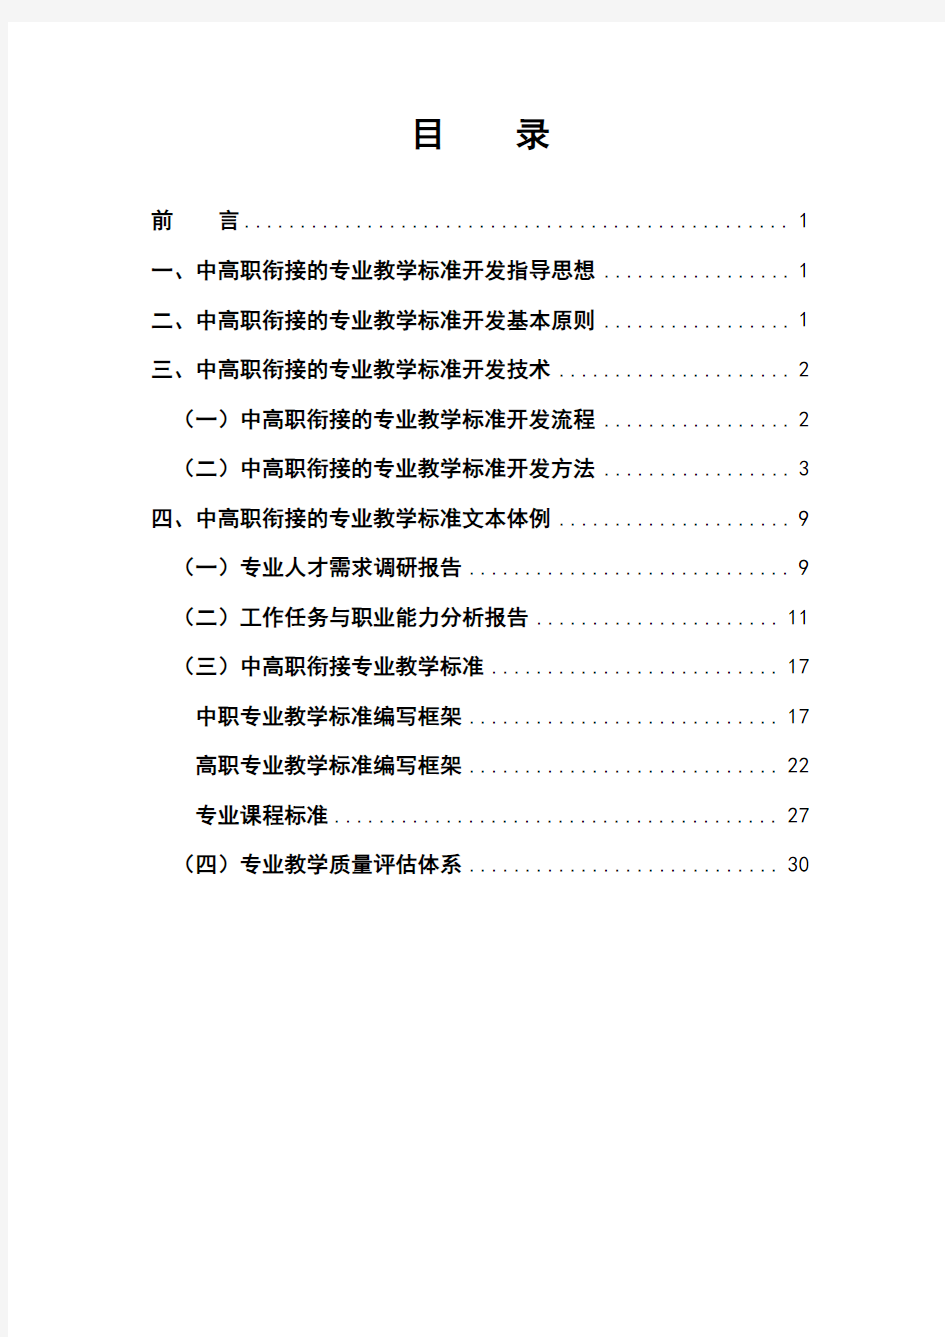 湖北省中高职衔接职业教育专业教学标准开发指导手册20131230修订